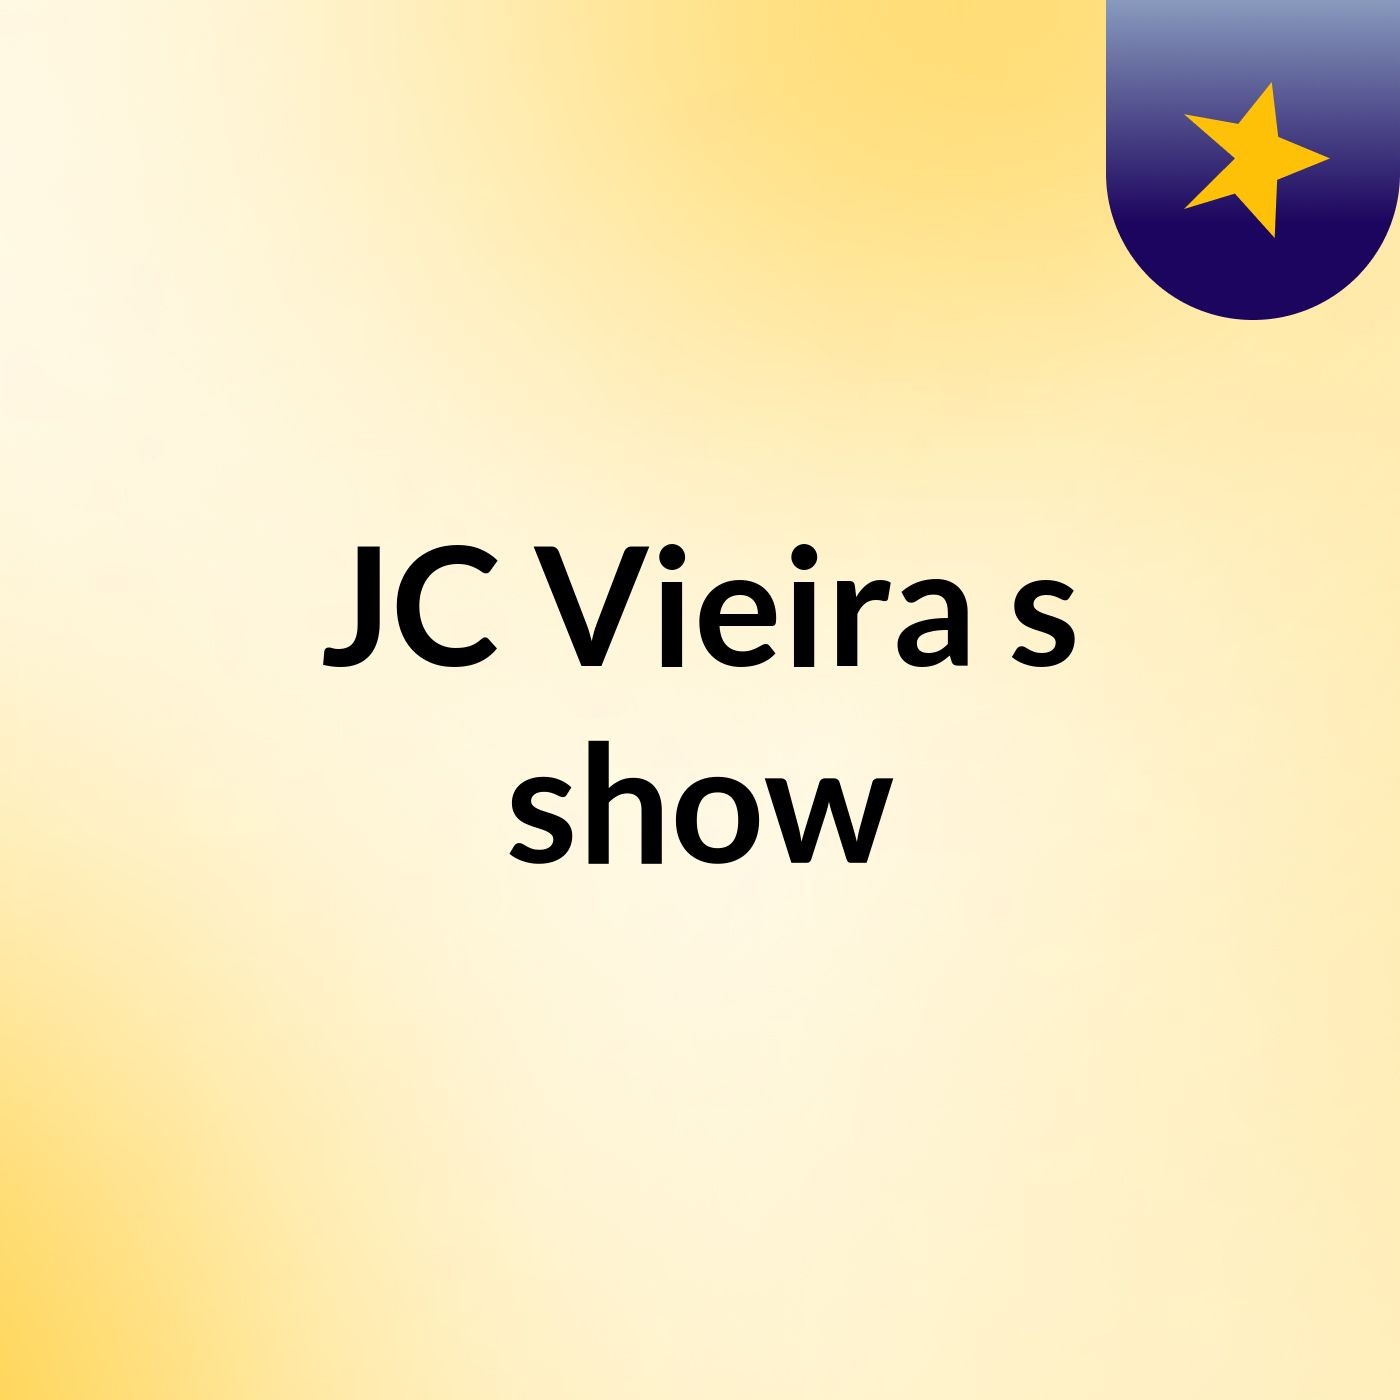 JC Vieira's show